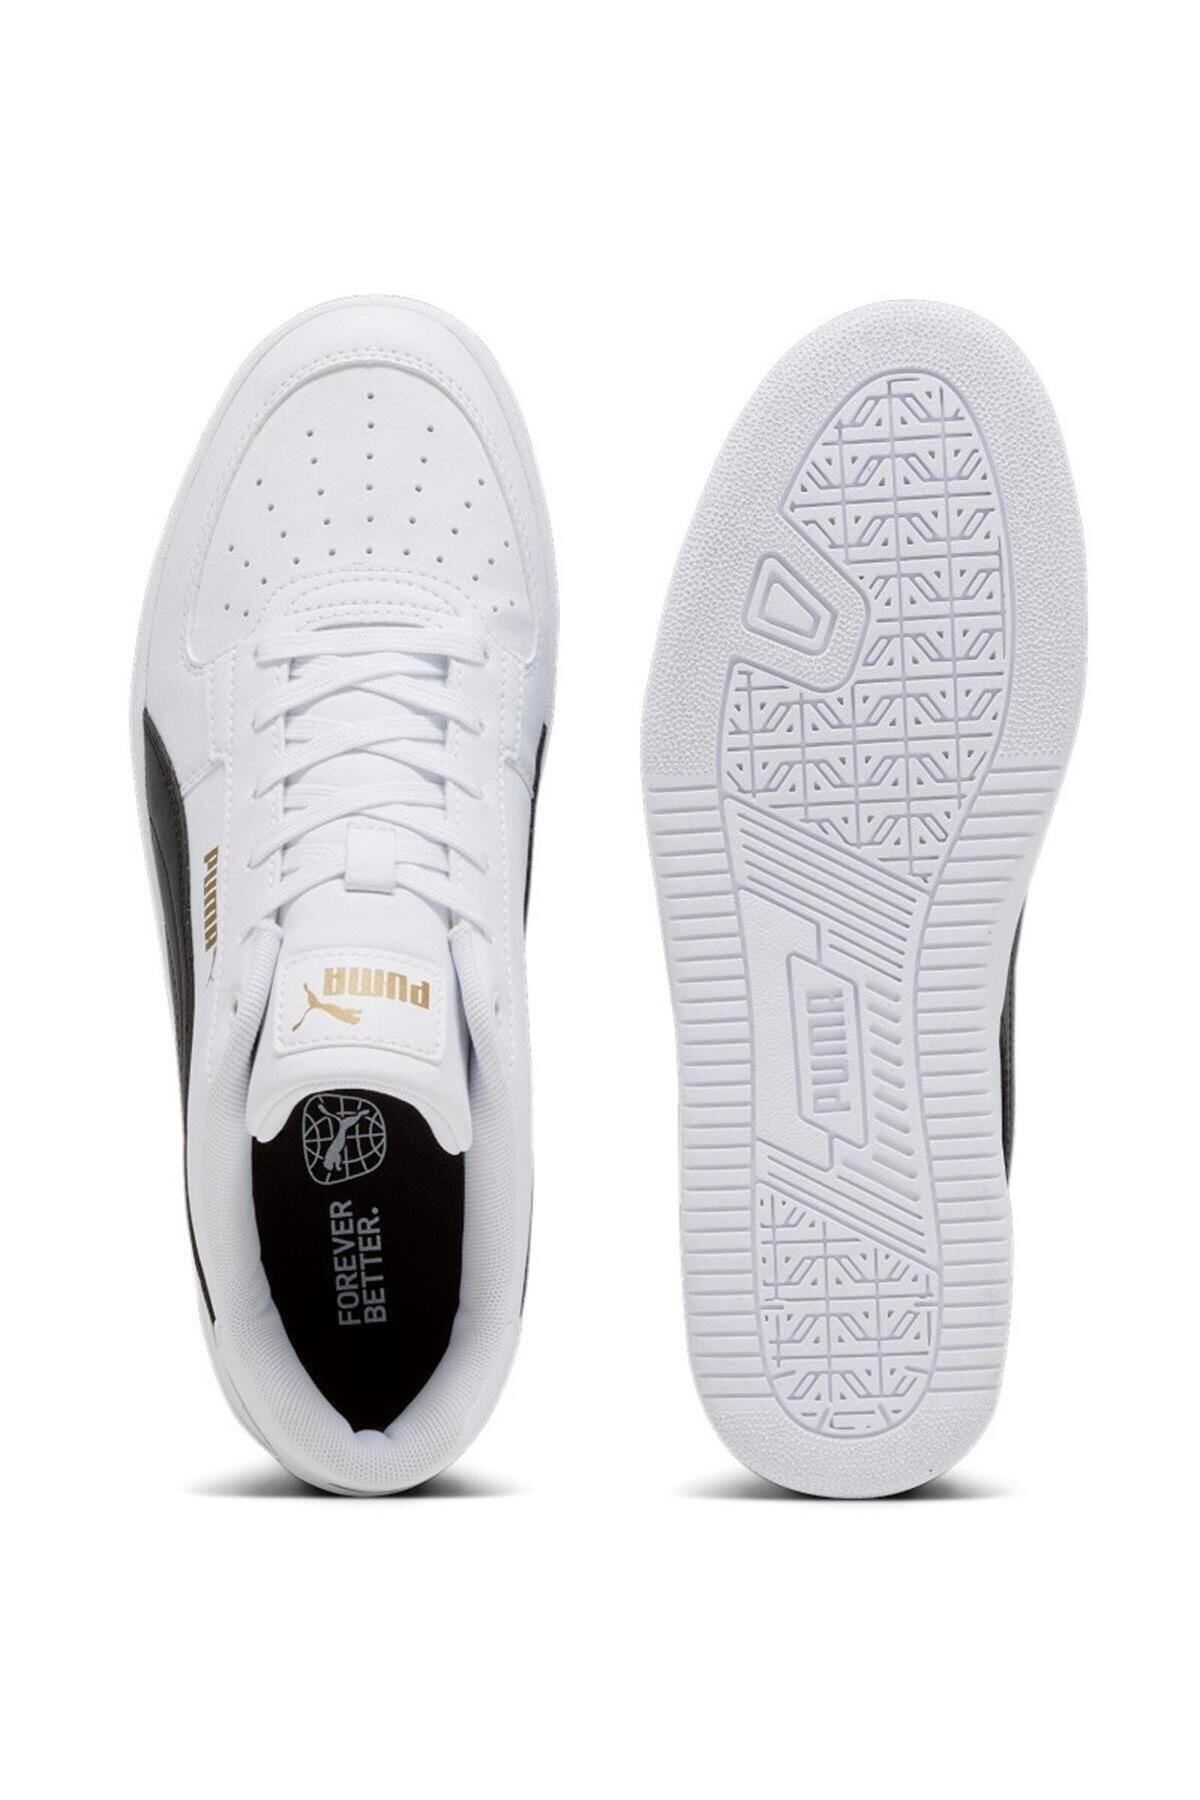 Puma Caven 2.0 Beyaz Siyah Erkek Sneaker Günlük Spor Ayakkabı